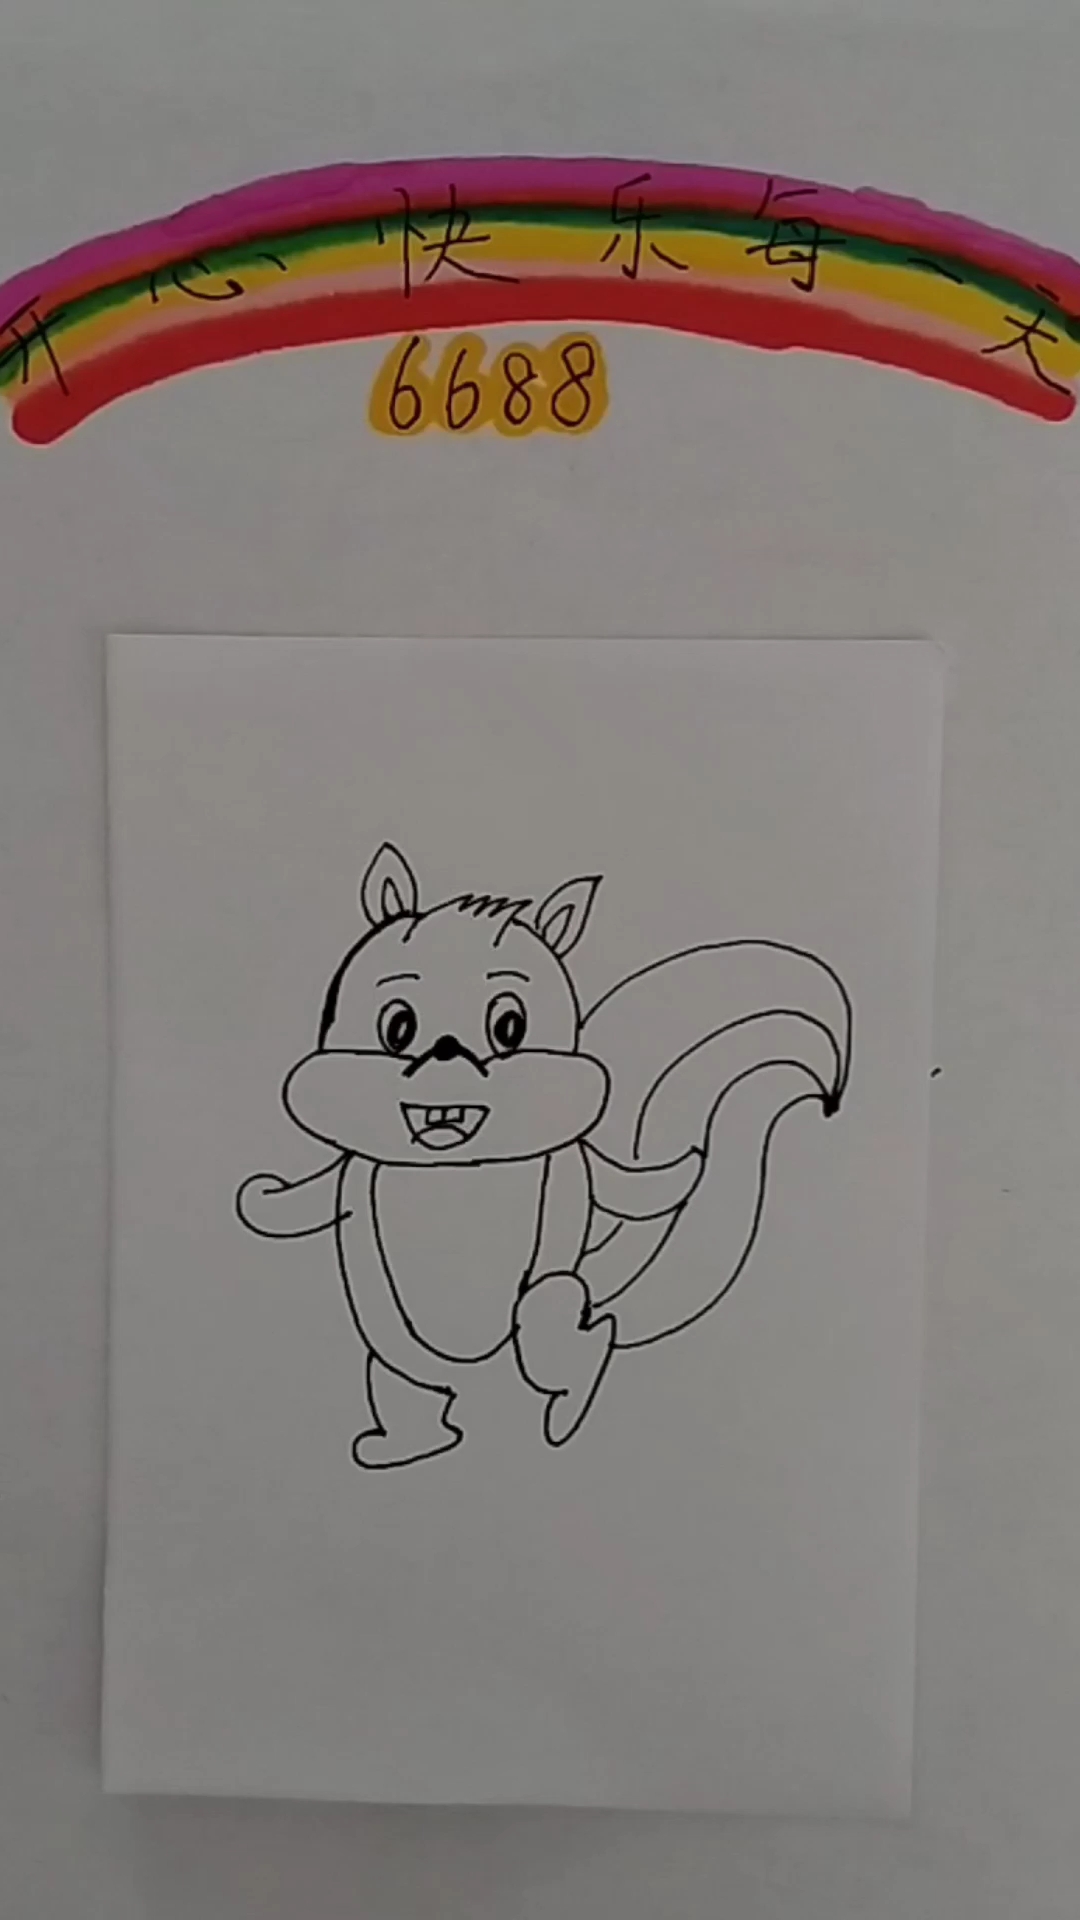 怎样画小松鼠比较可爱图片